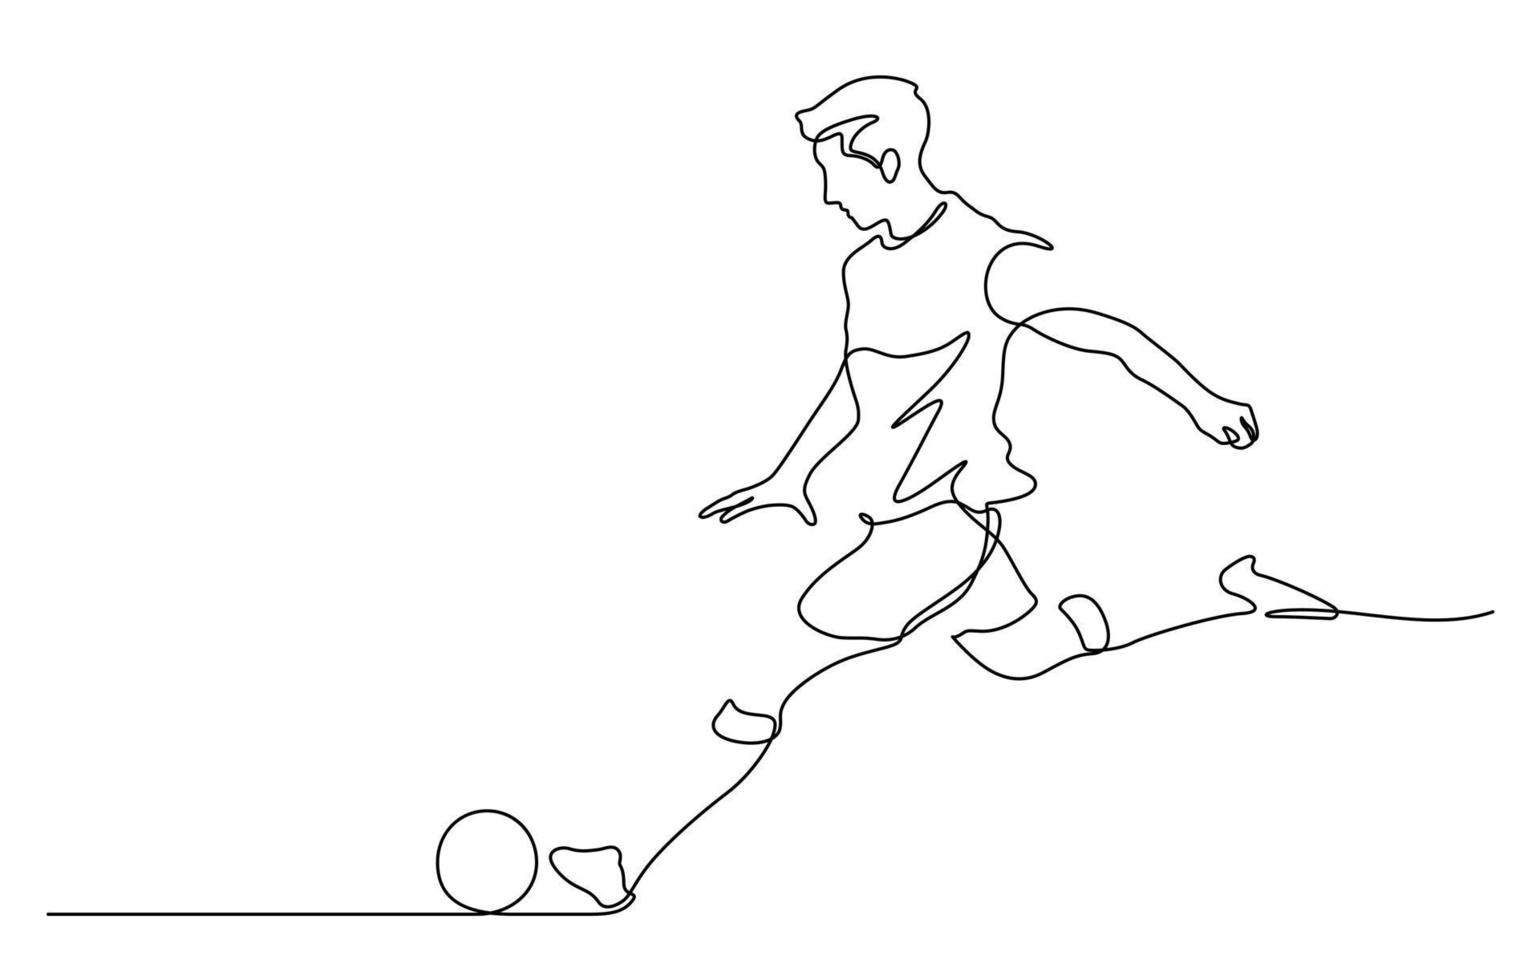 continuo linea disegno di uomo tiro calcio vettore illustrazione